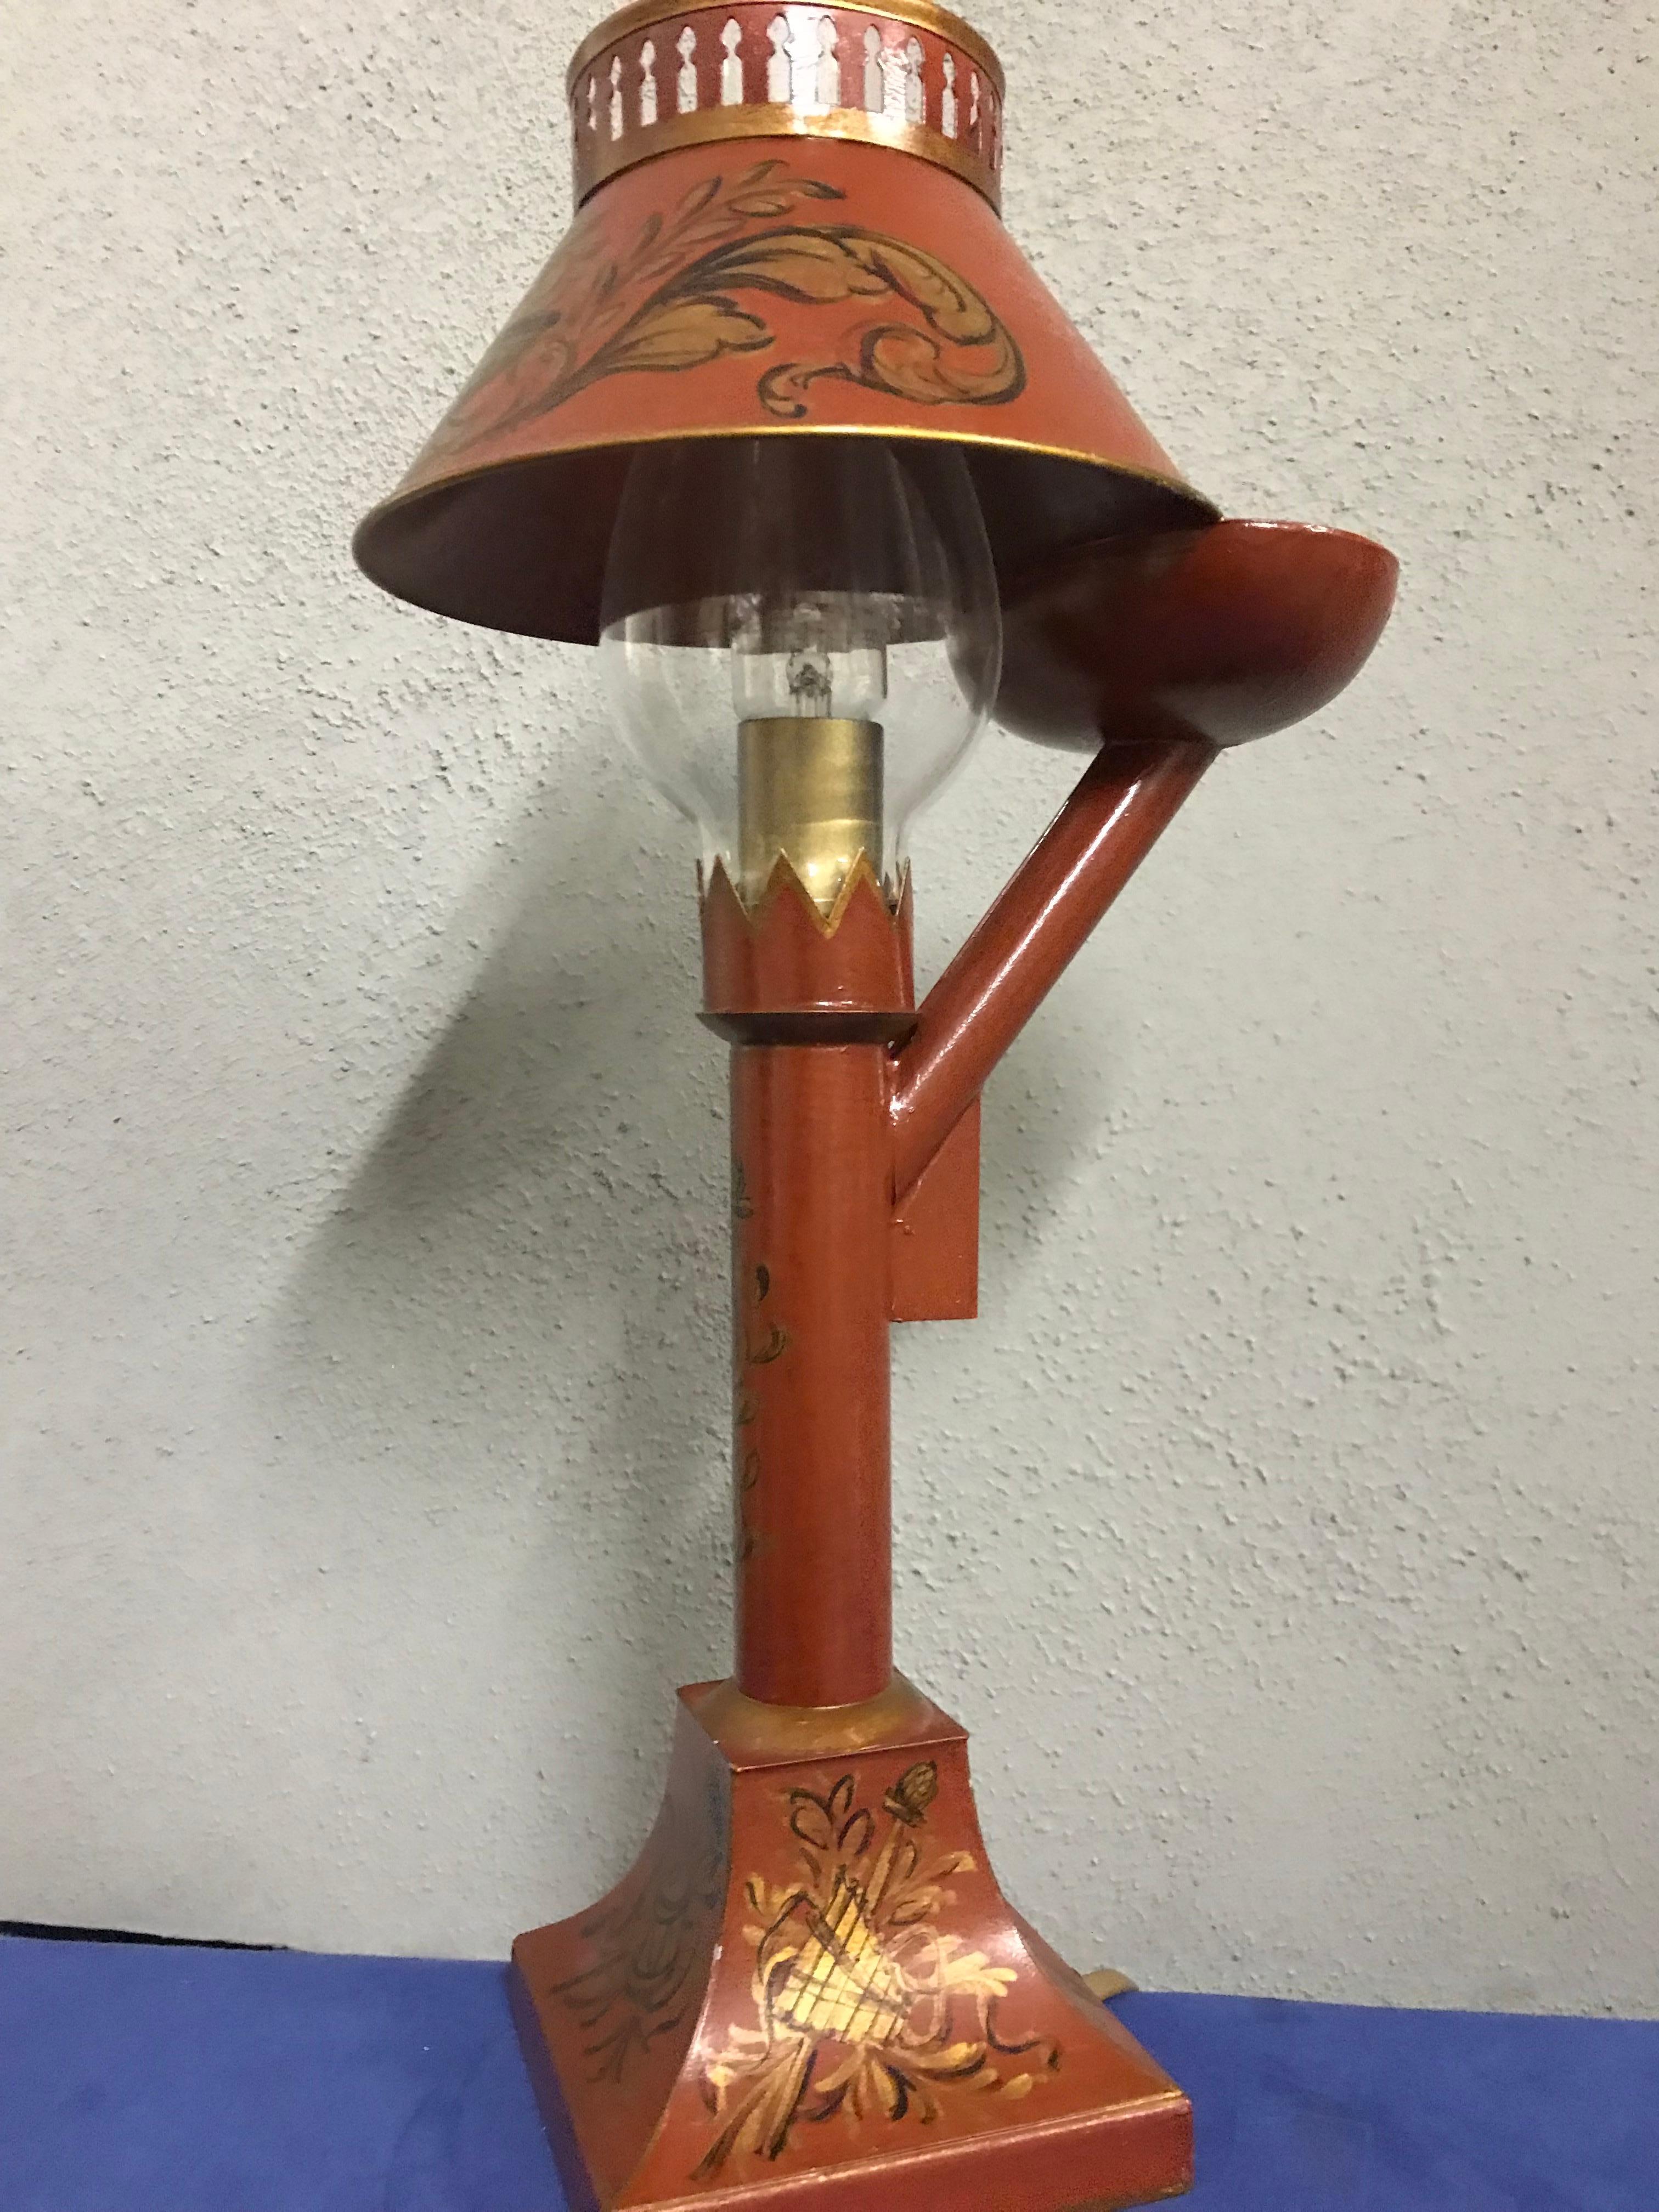 Exquise petite lampe à huile de style anglais de Gherardo Degli Albizzi, en forme de lampe à huile, avec une décoration peinte à la main sur toute la surface. Sur la base, on trouve des décorations classiques telles que des instruments de musique et